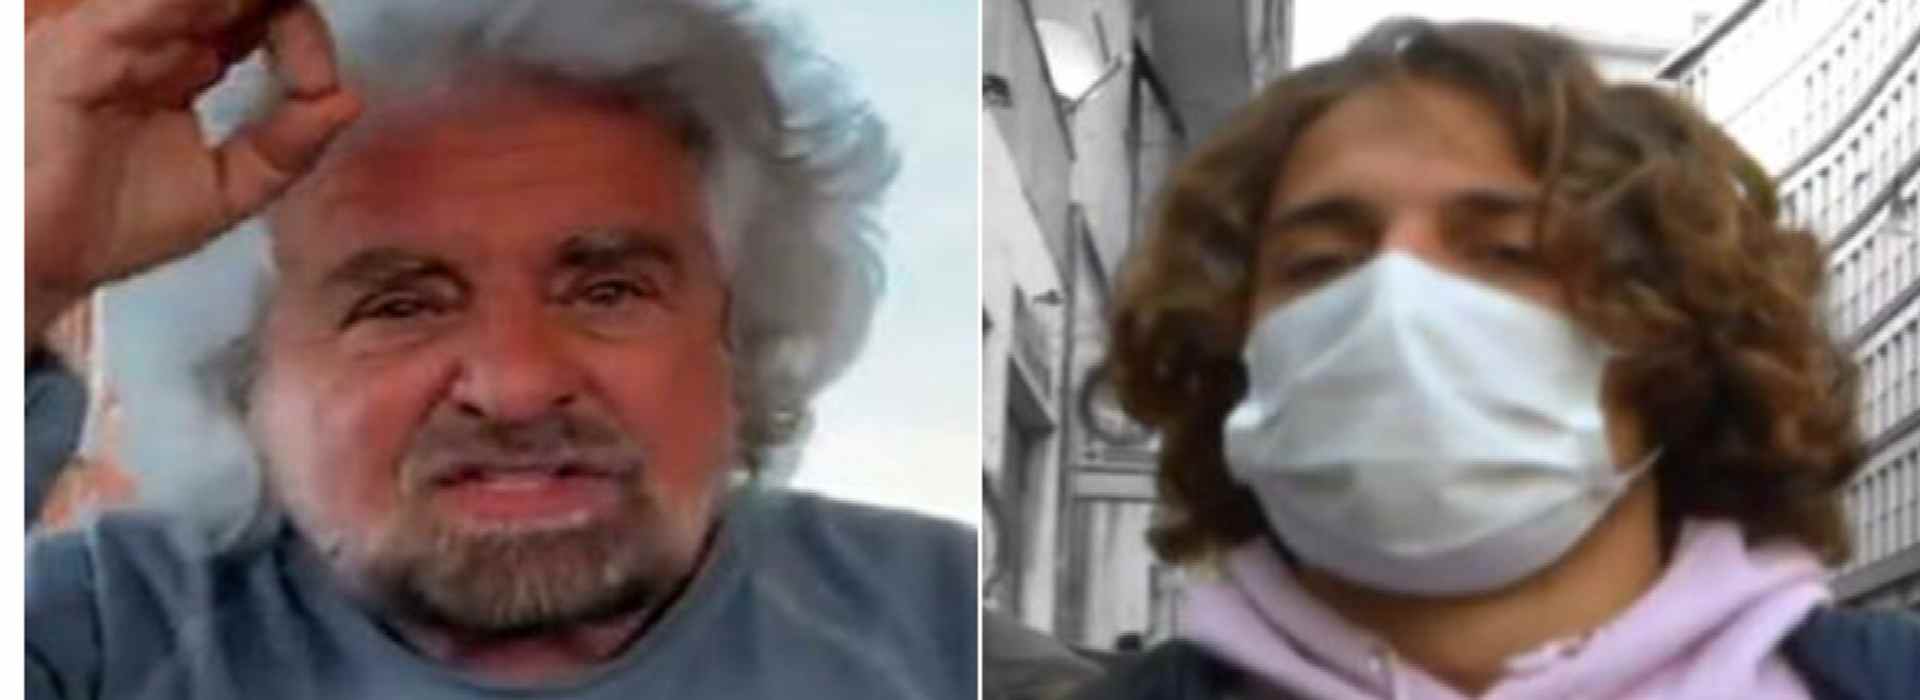 Ciro Grillo, il quadro si fa grave per gli indagati